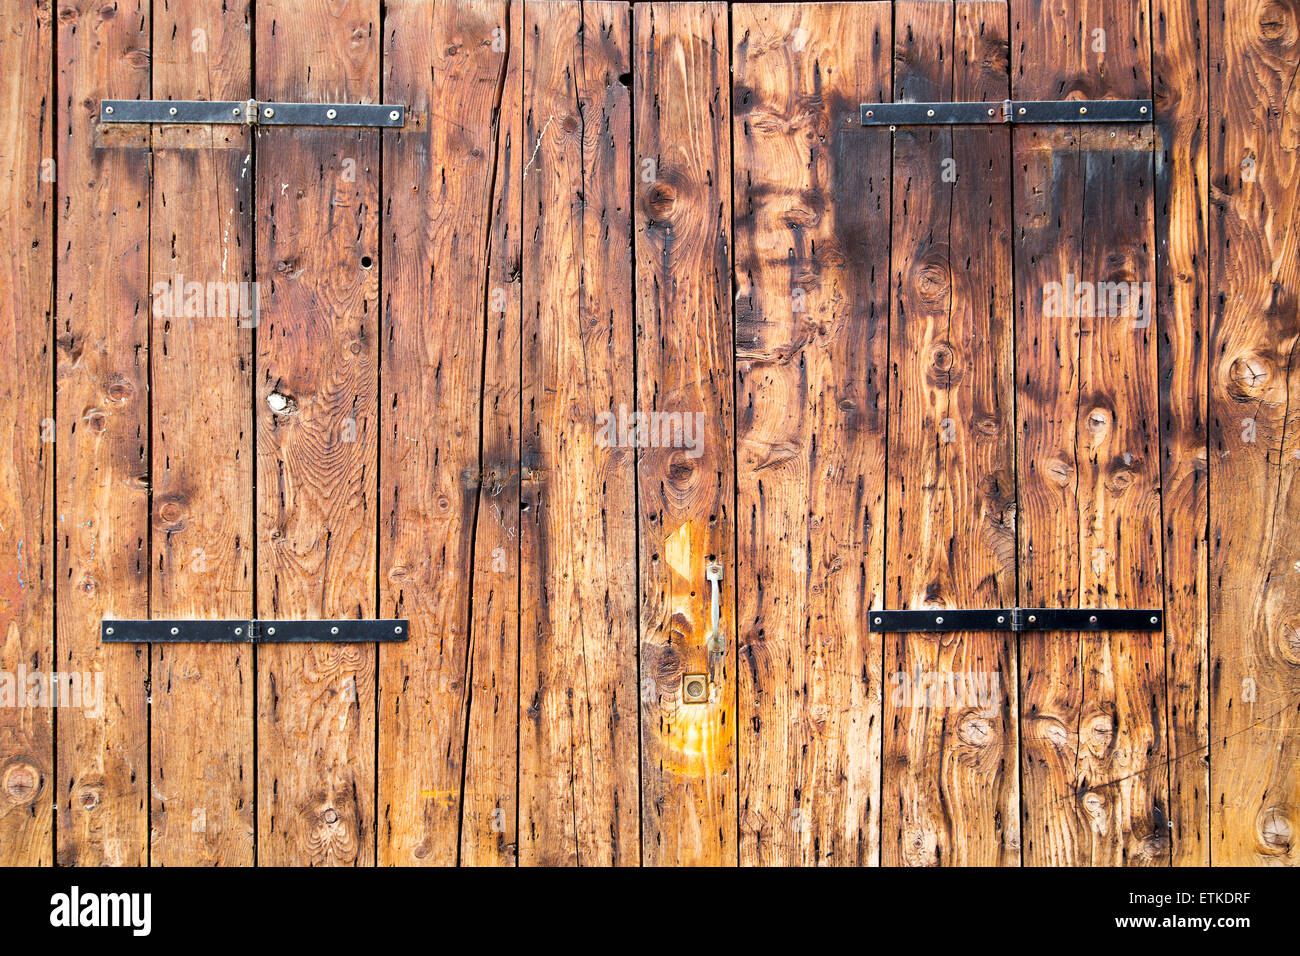 Old wooden barn antique door textured background Stock Photo